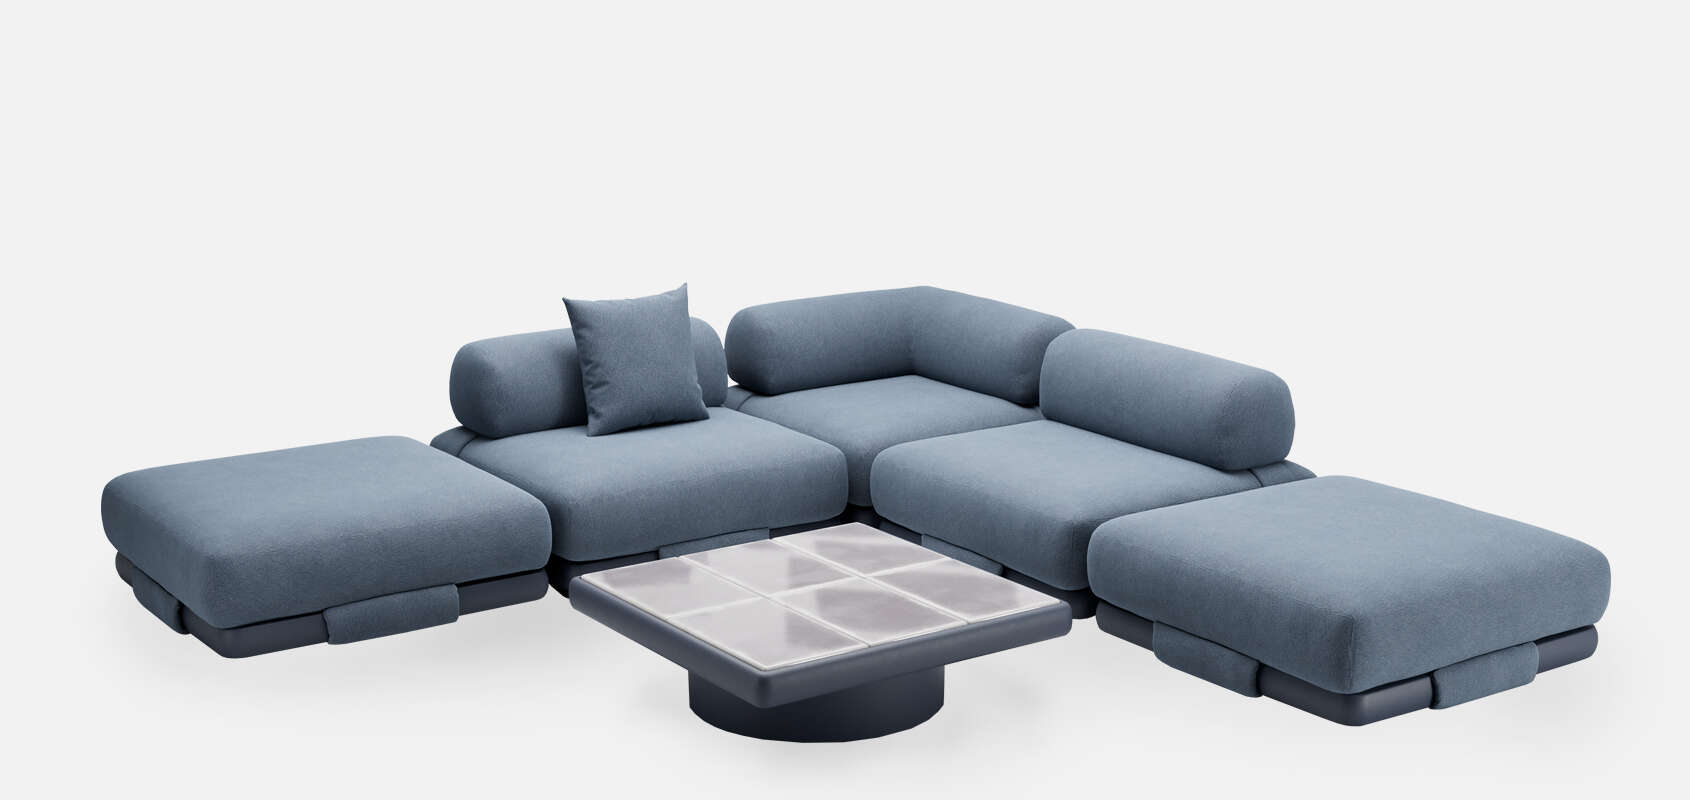 Insula Modular Sofa